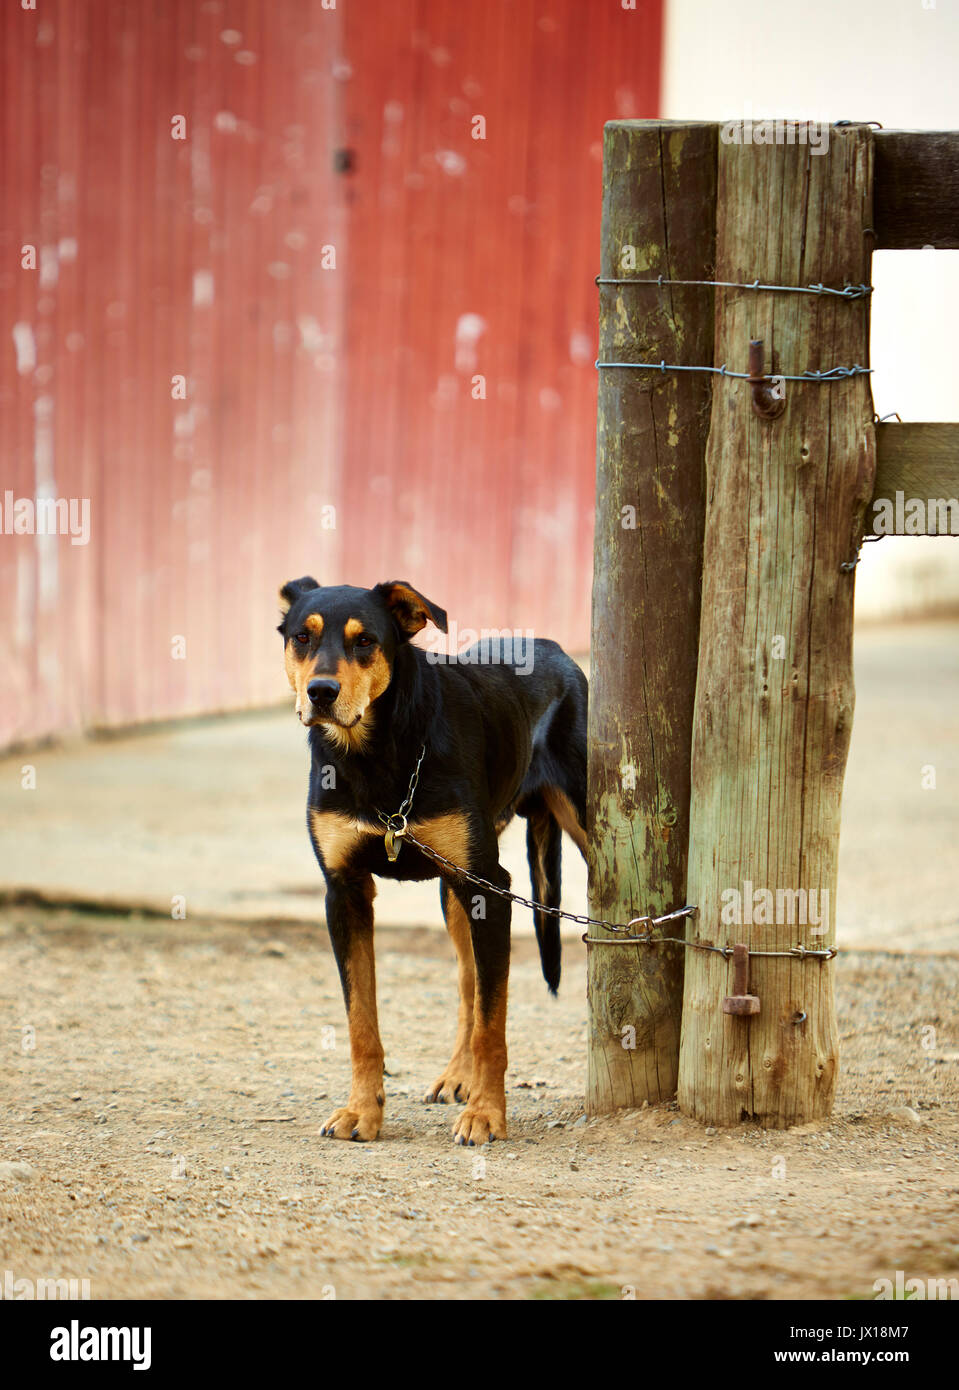 Farm Shepherds dog at the woodshed Stock Photo